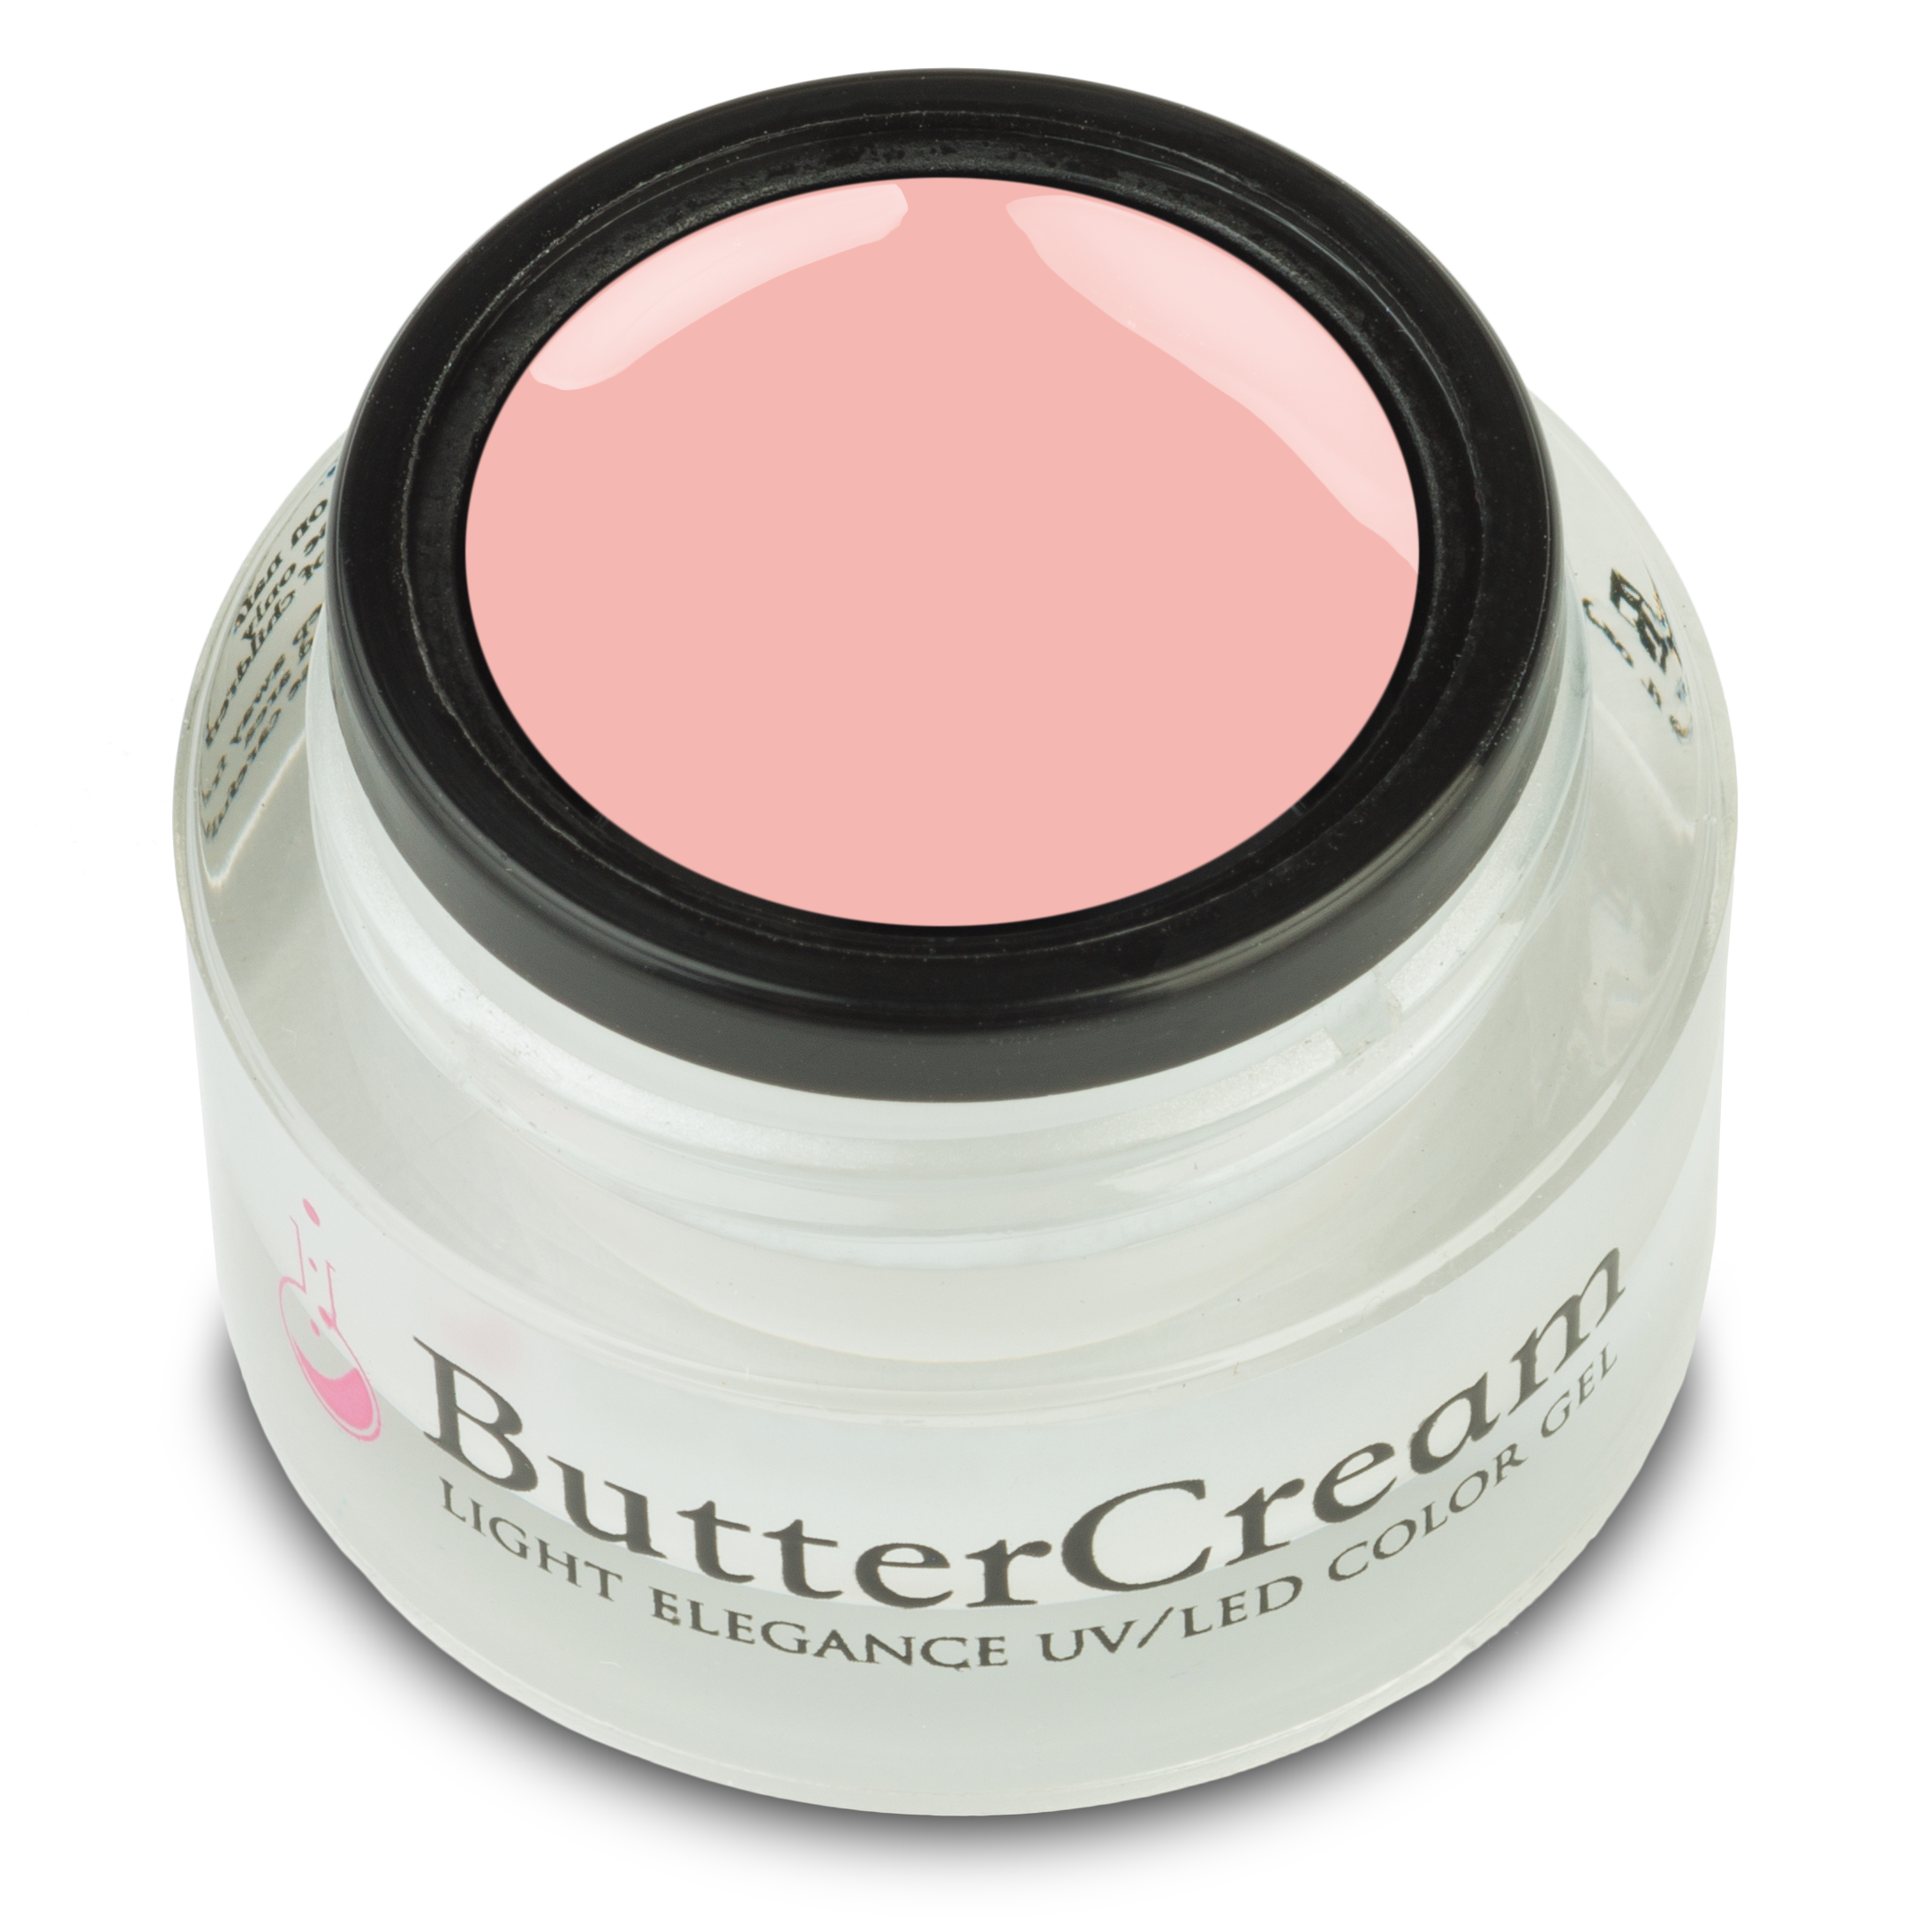 Light Elegance ButterCream - Going Organic